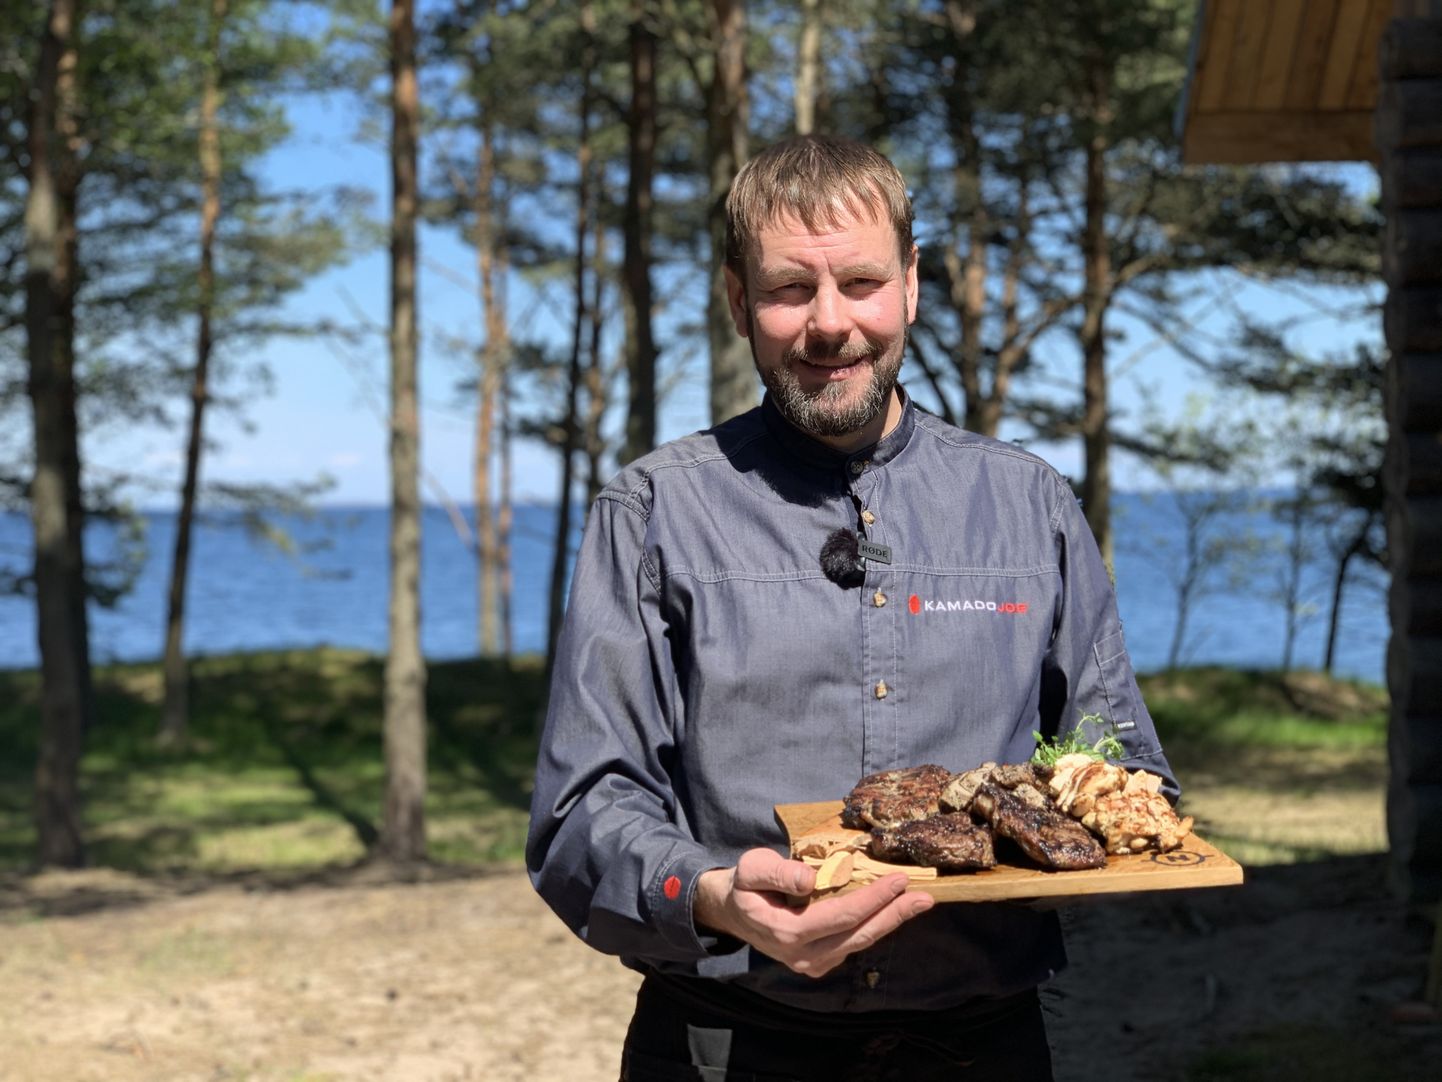 OMAD NIPID: Enn Tobreluts tegi sel suvel koostööd ka Saaremaa Lihatööstusega. Just tema nippide ja ideedega sündis Saaremaa Lihatööstuse uus suvetoodete sari.